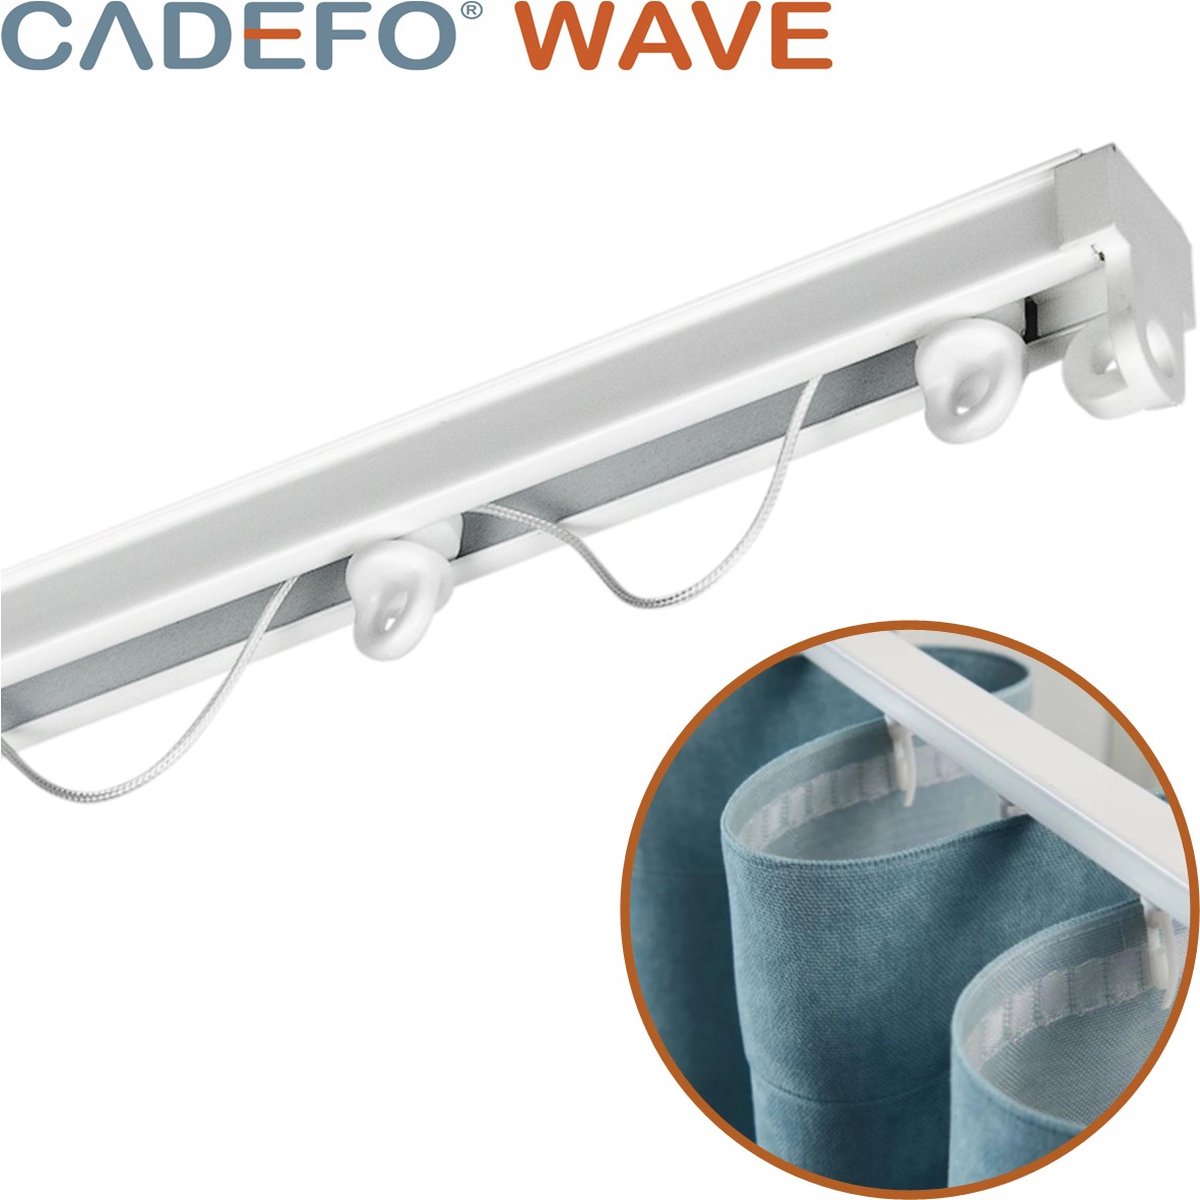 CADEFO WAVE (501 - 550 cm) Gordijnrails - Compleet op maat! - UIT 1 STUK - Leverbaar tot 6 meter - Plafondbevestiging - Lengte 523 cm